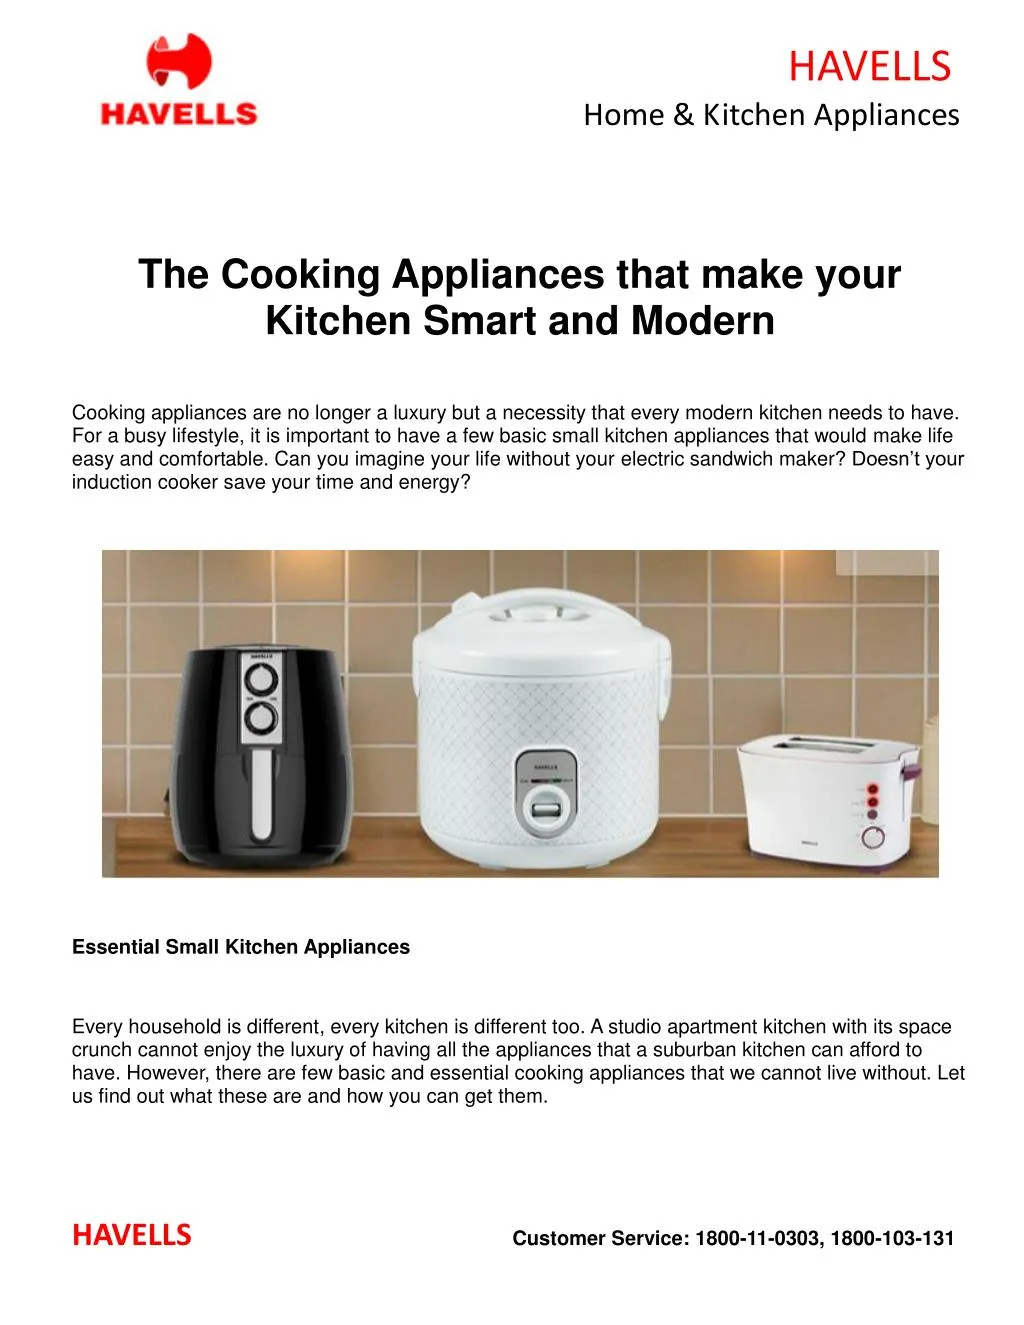 essay on modern appliances